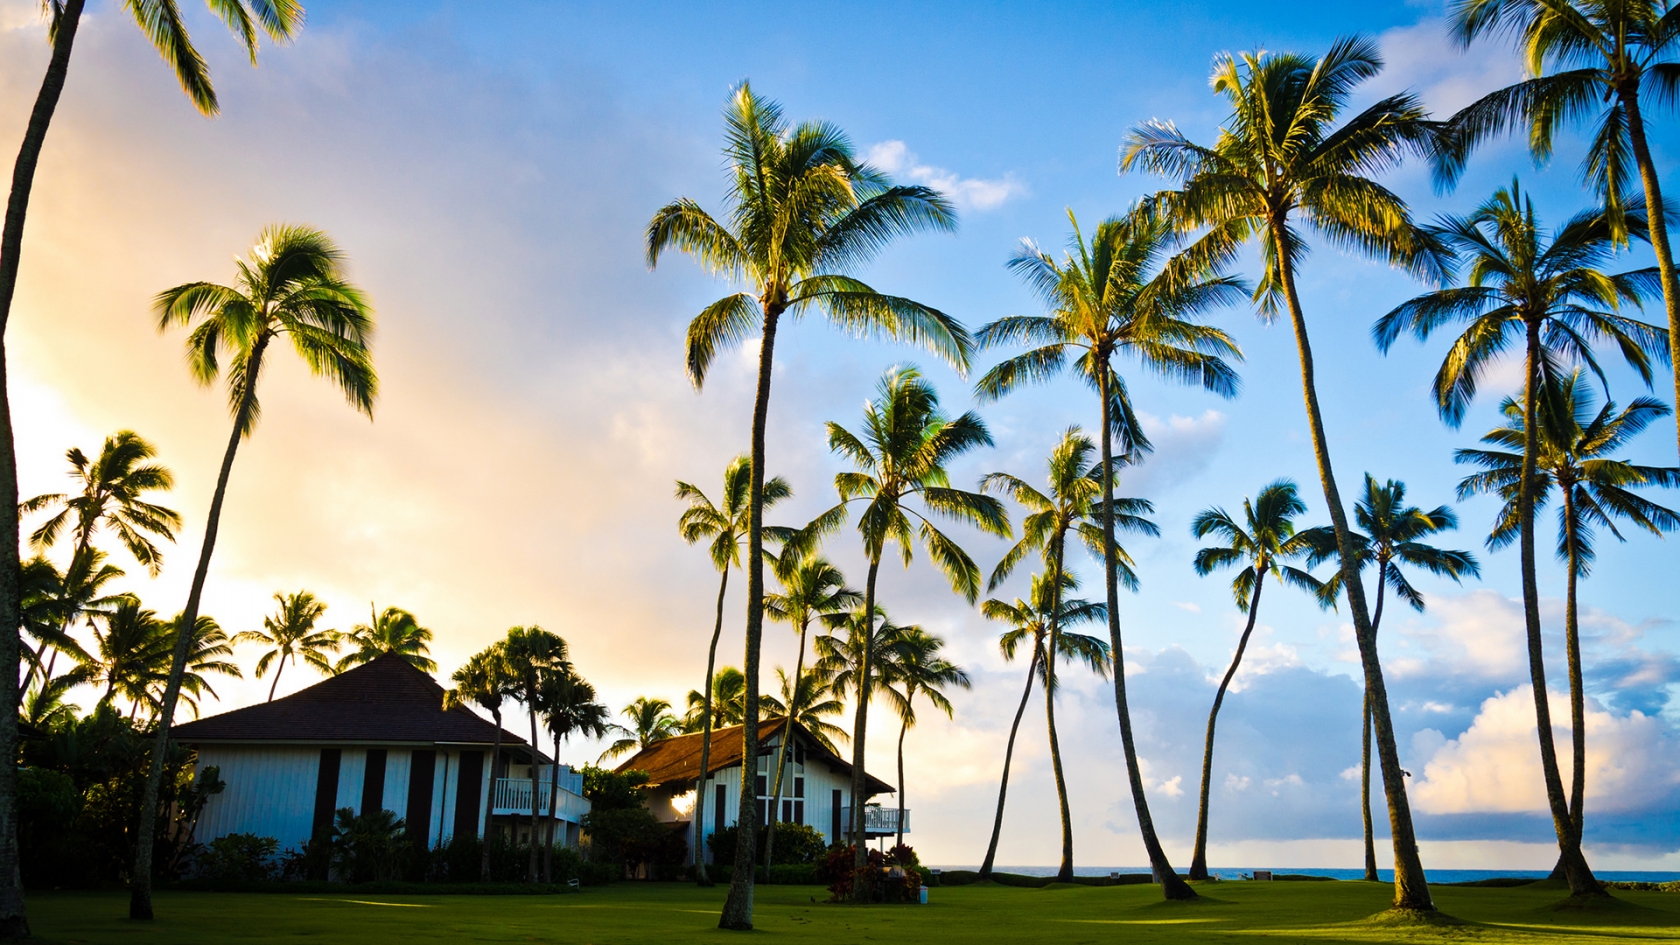 Hawaii Beach Houses for 1680 x 945 HDTV resolution